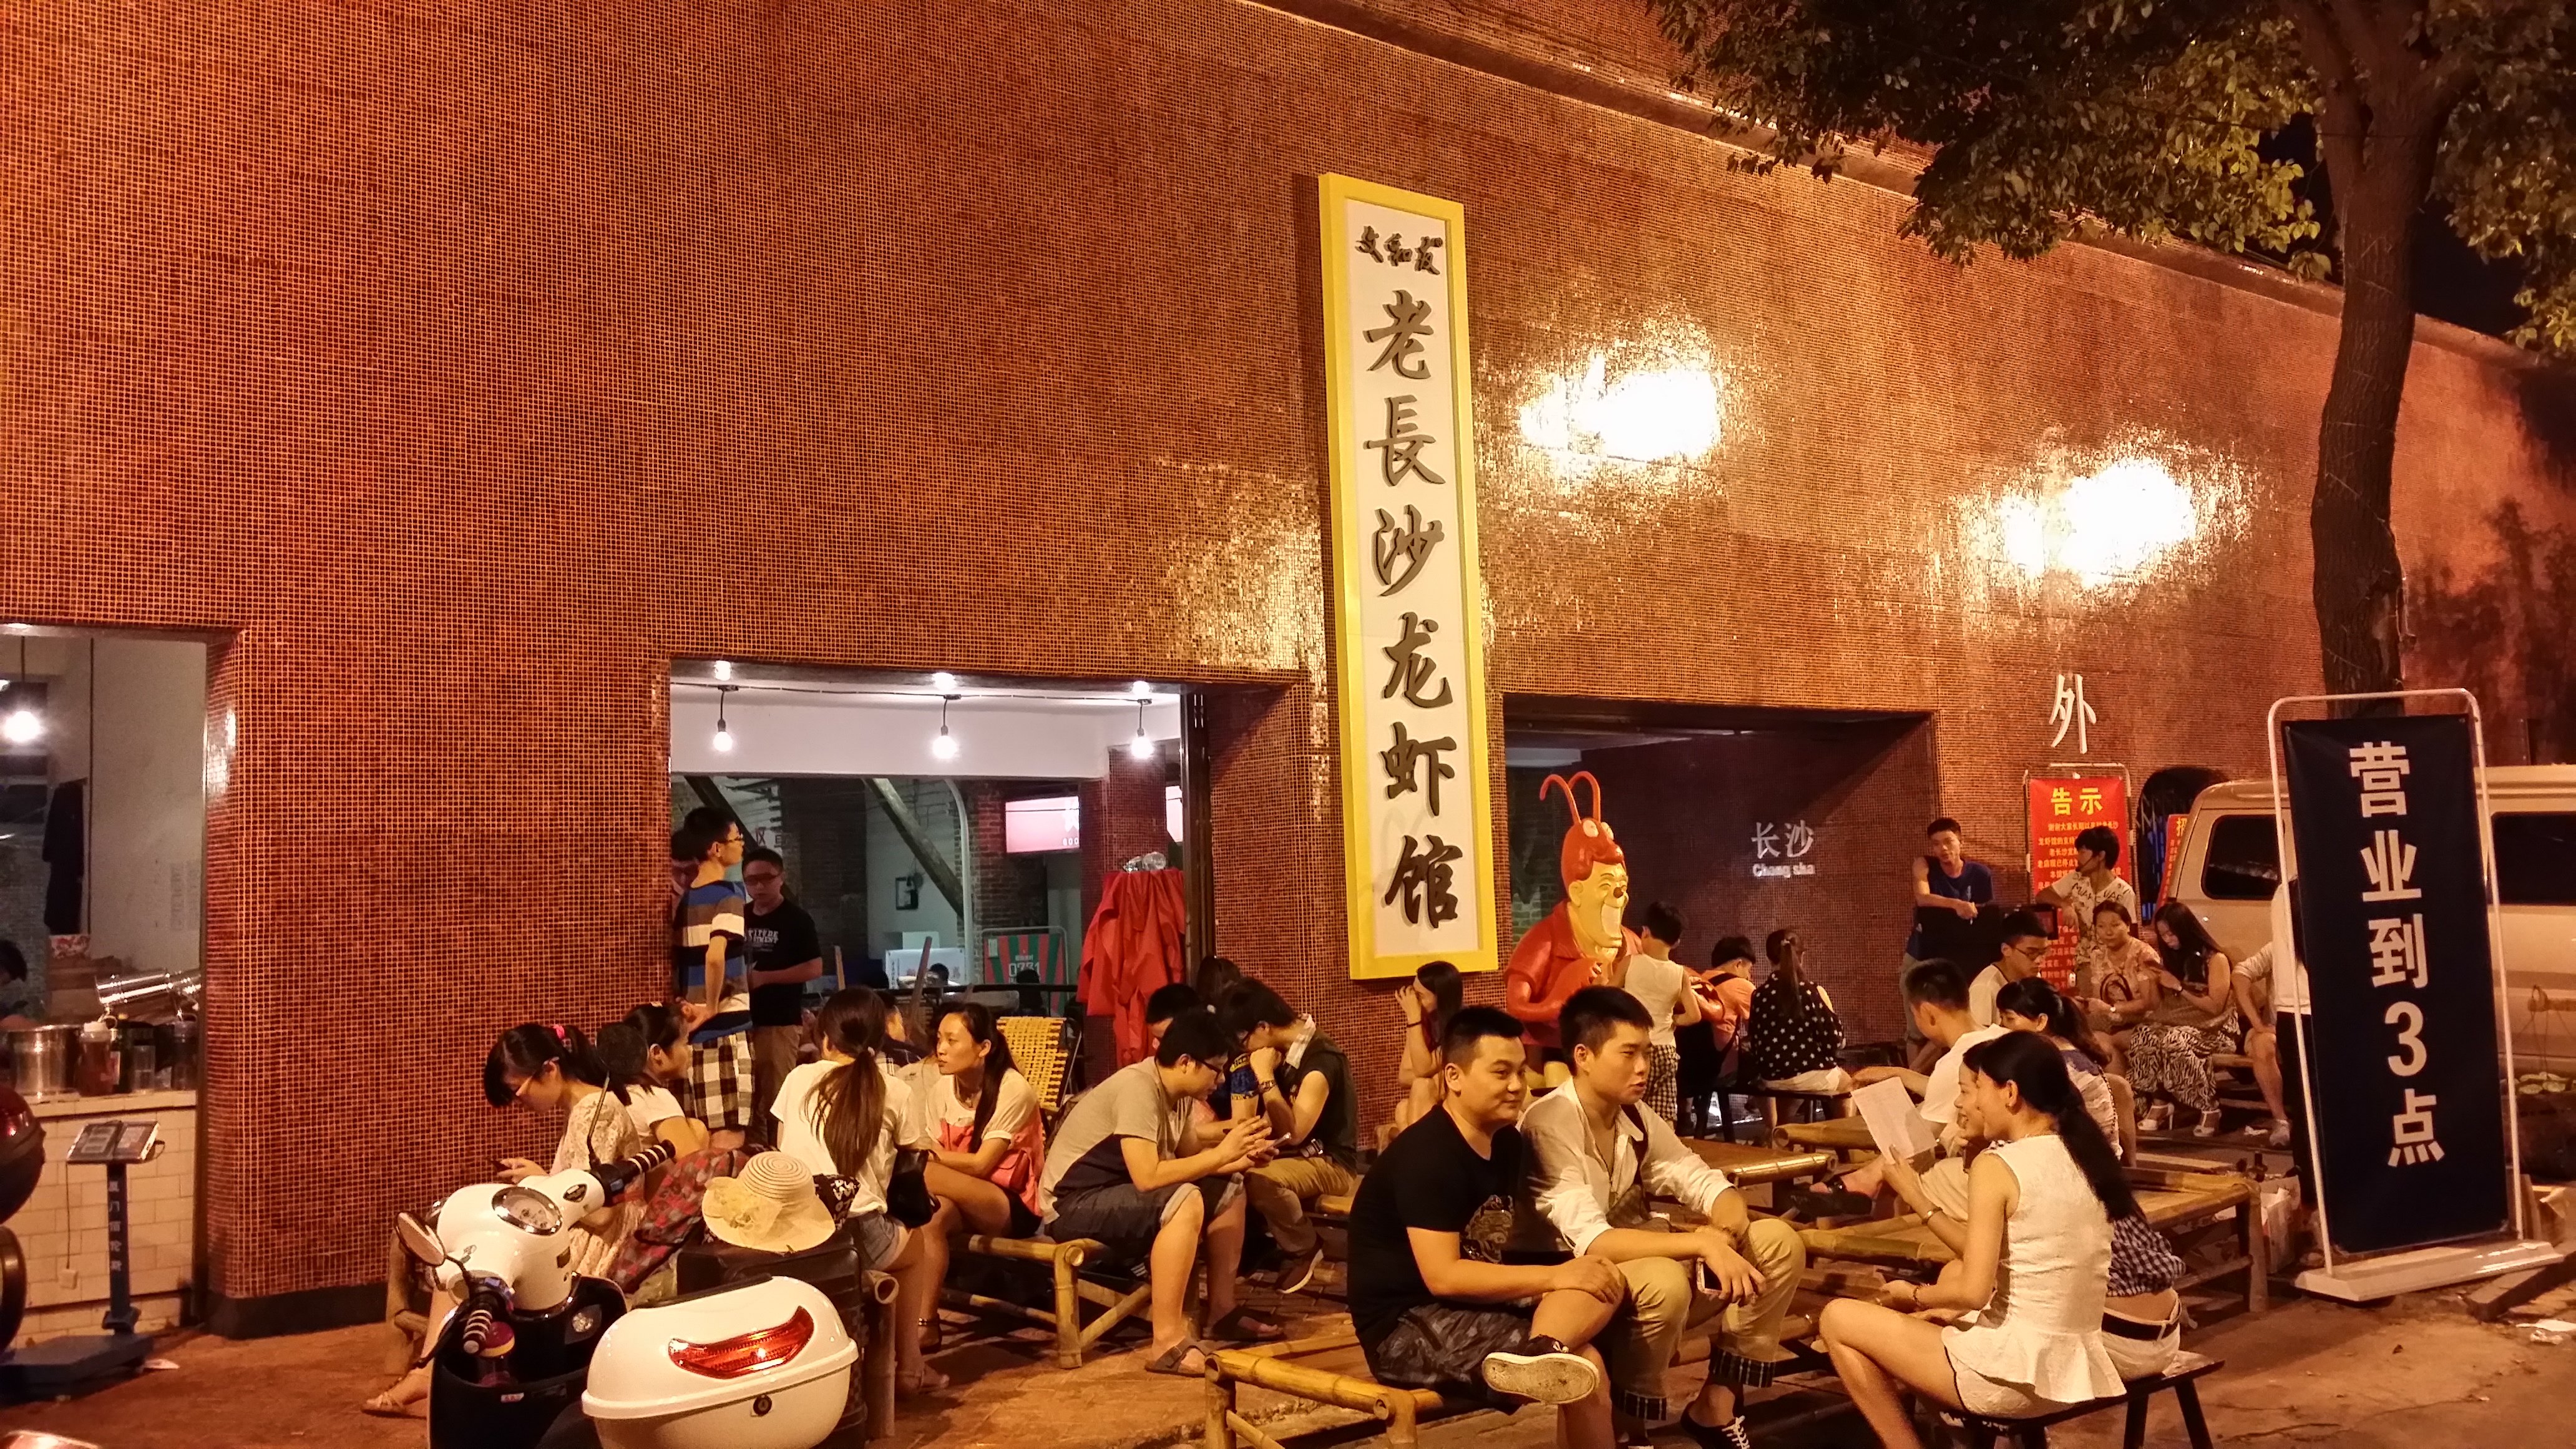 【携程美食林】长沙超级文和友(海信广场店)餐馆,晚上8点过去,排队的